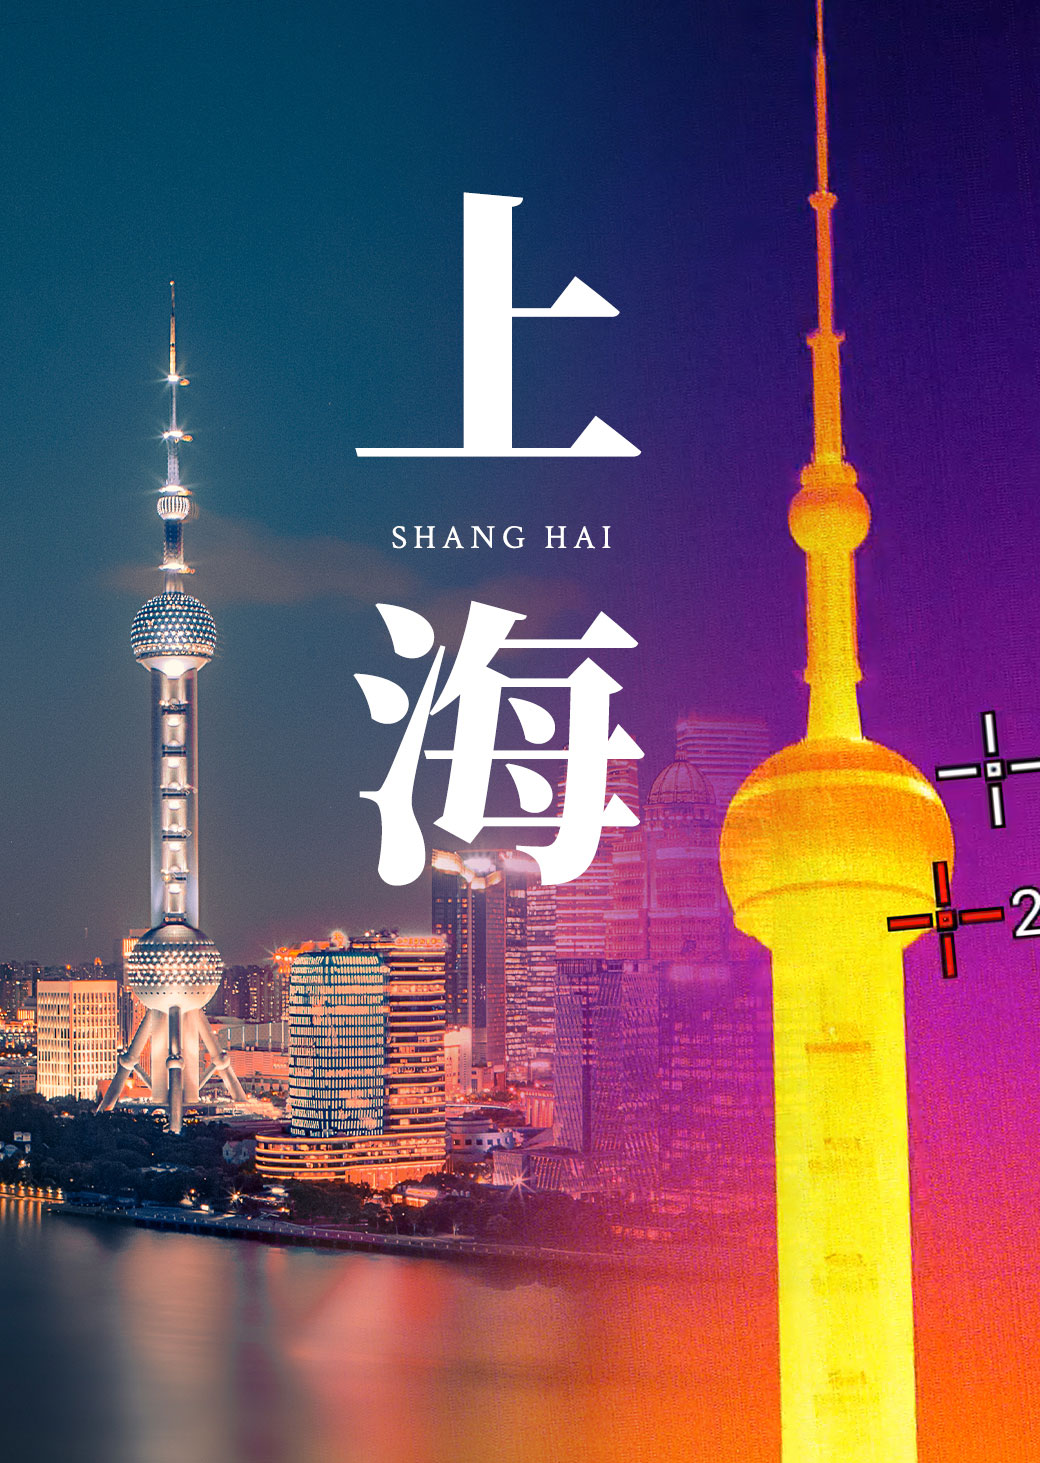 红外出圈第四站—没有哪个城市能在这段bgm中打败上海! #感受一下魔都繁华的夜景 #热成像 #红外热成像 